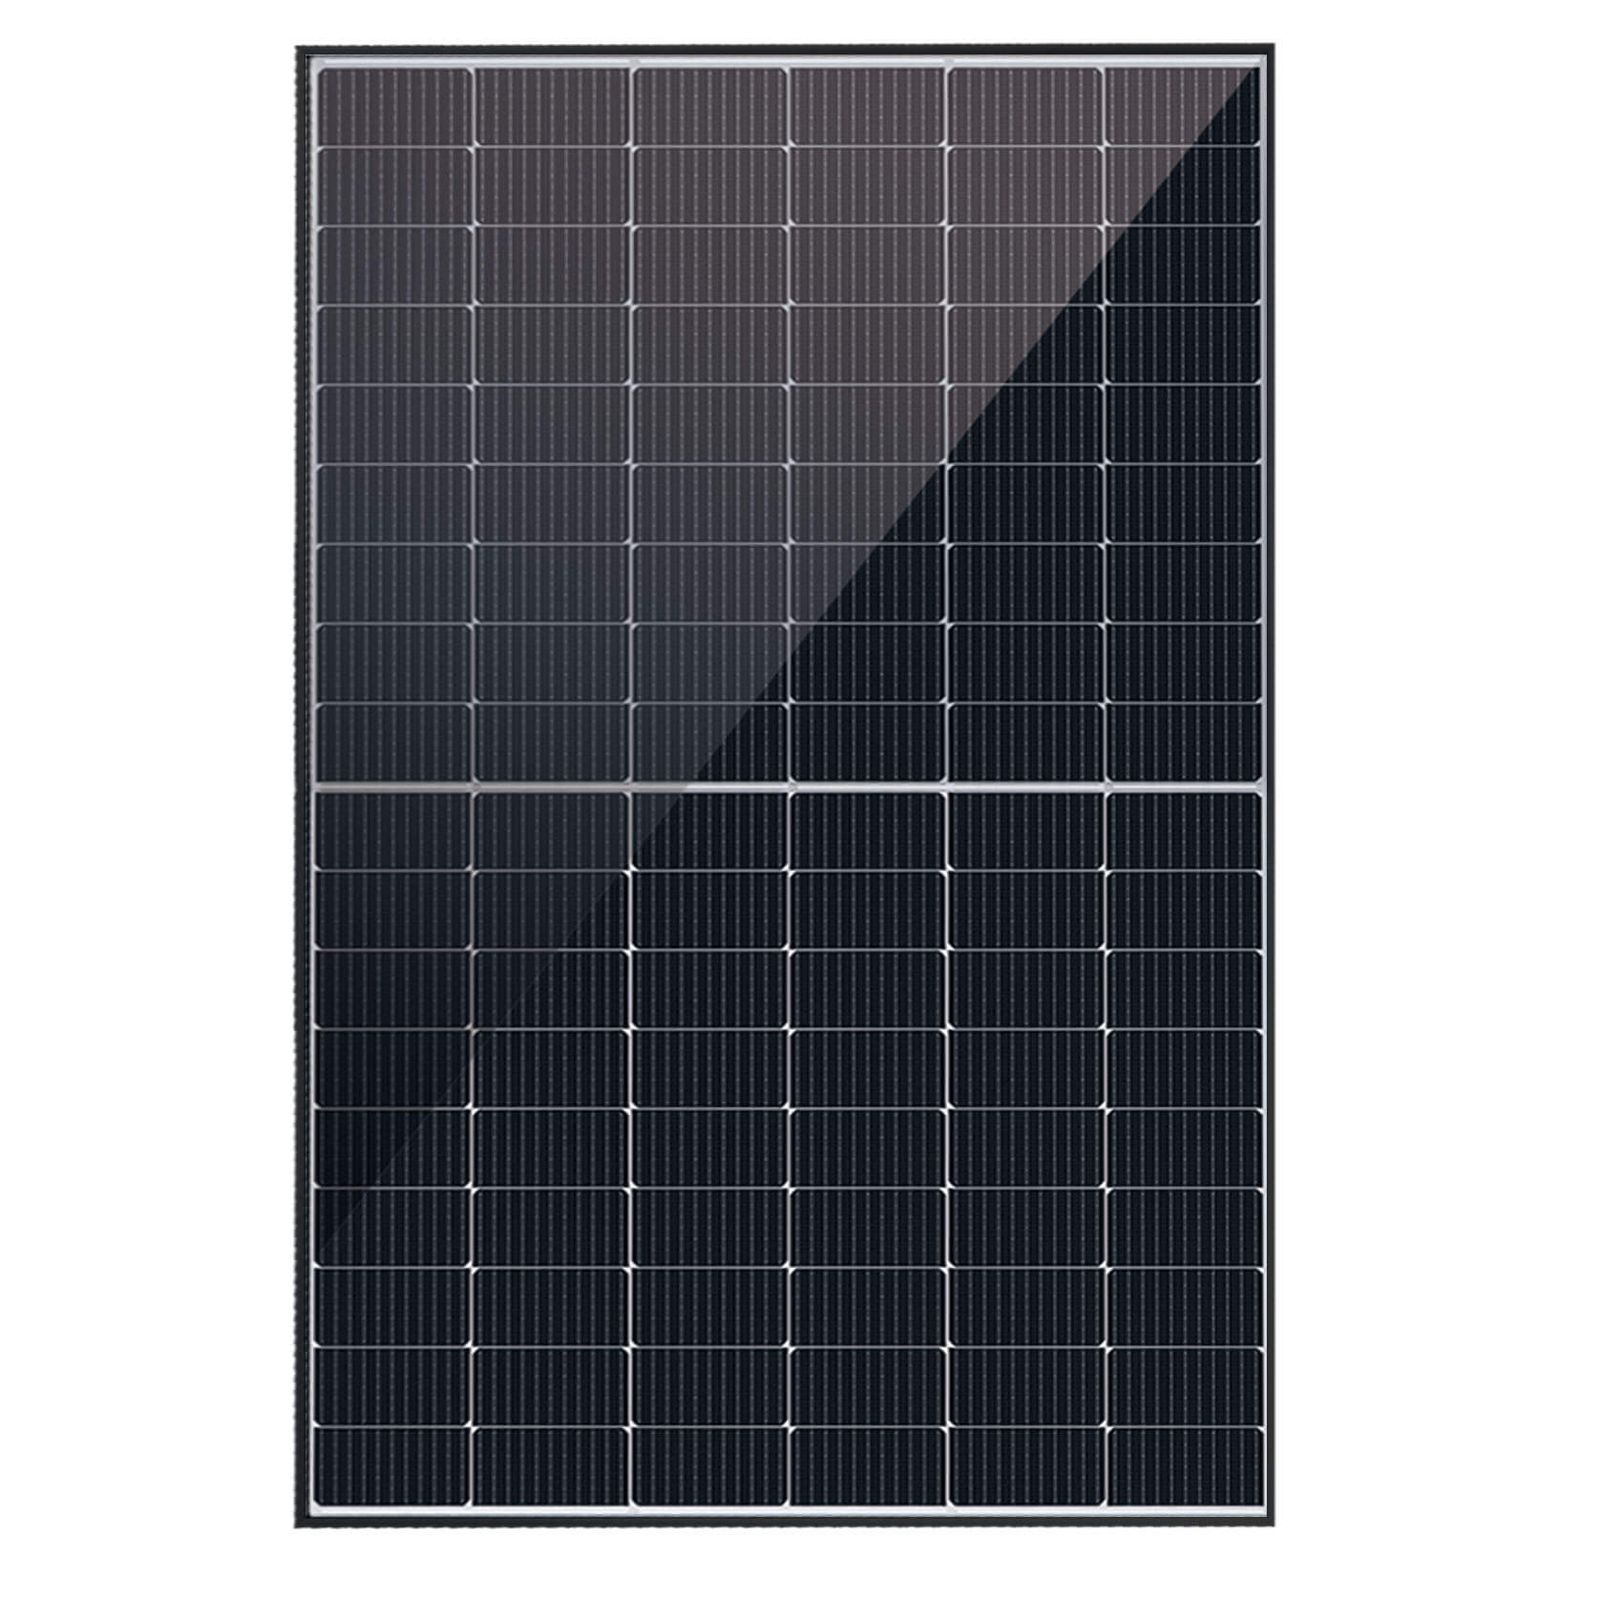 Astronergy N5s Photovoltaik-Solarmodul 440Wp CHSM54N-HC BF blackframe